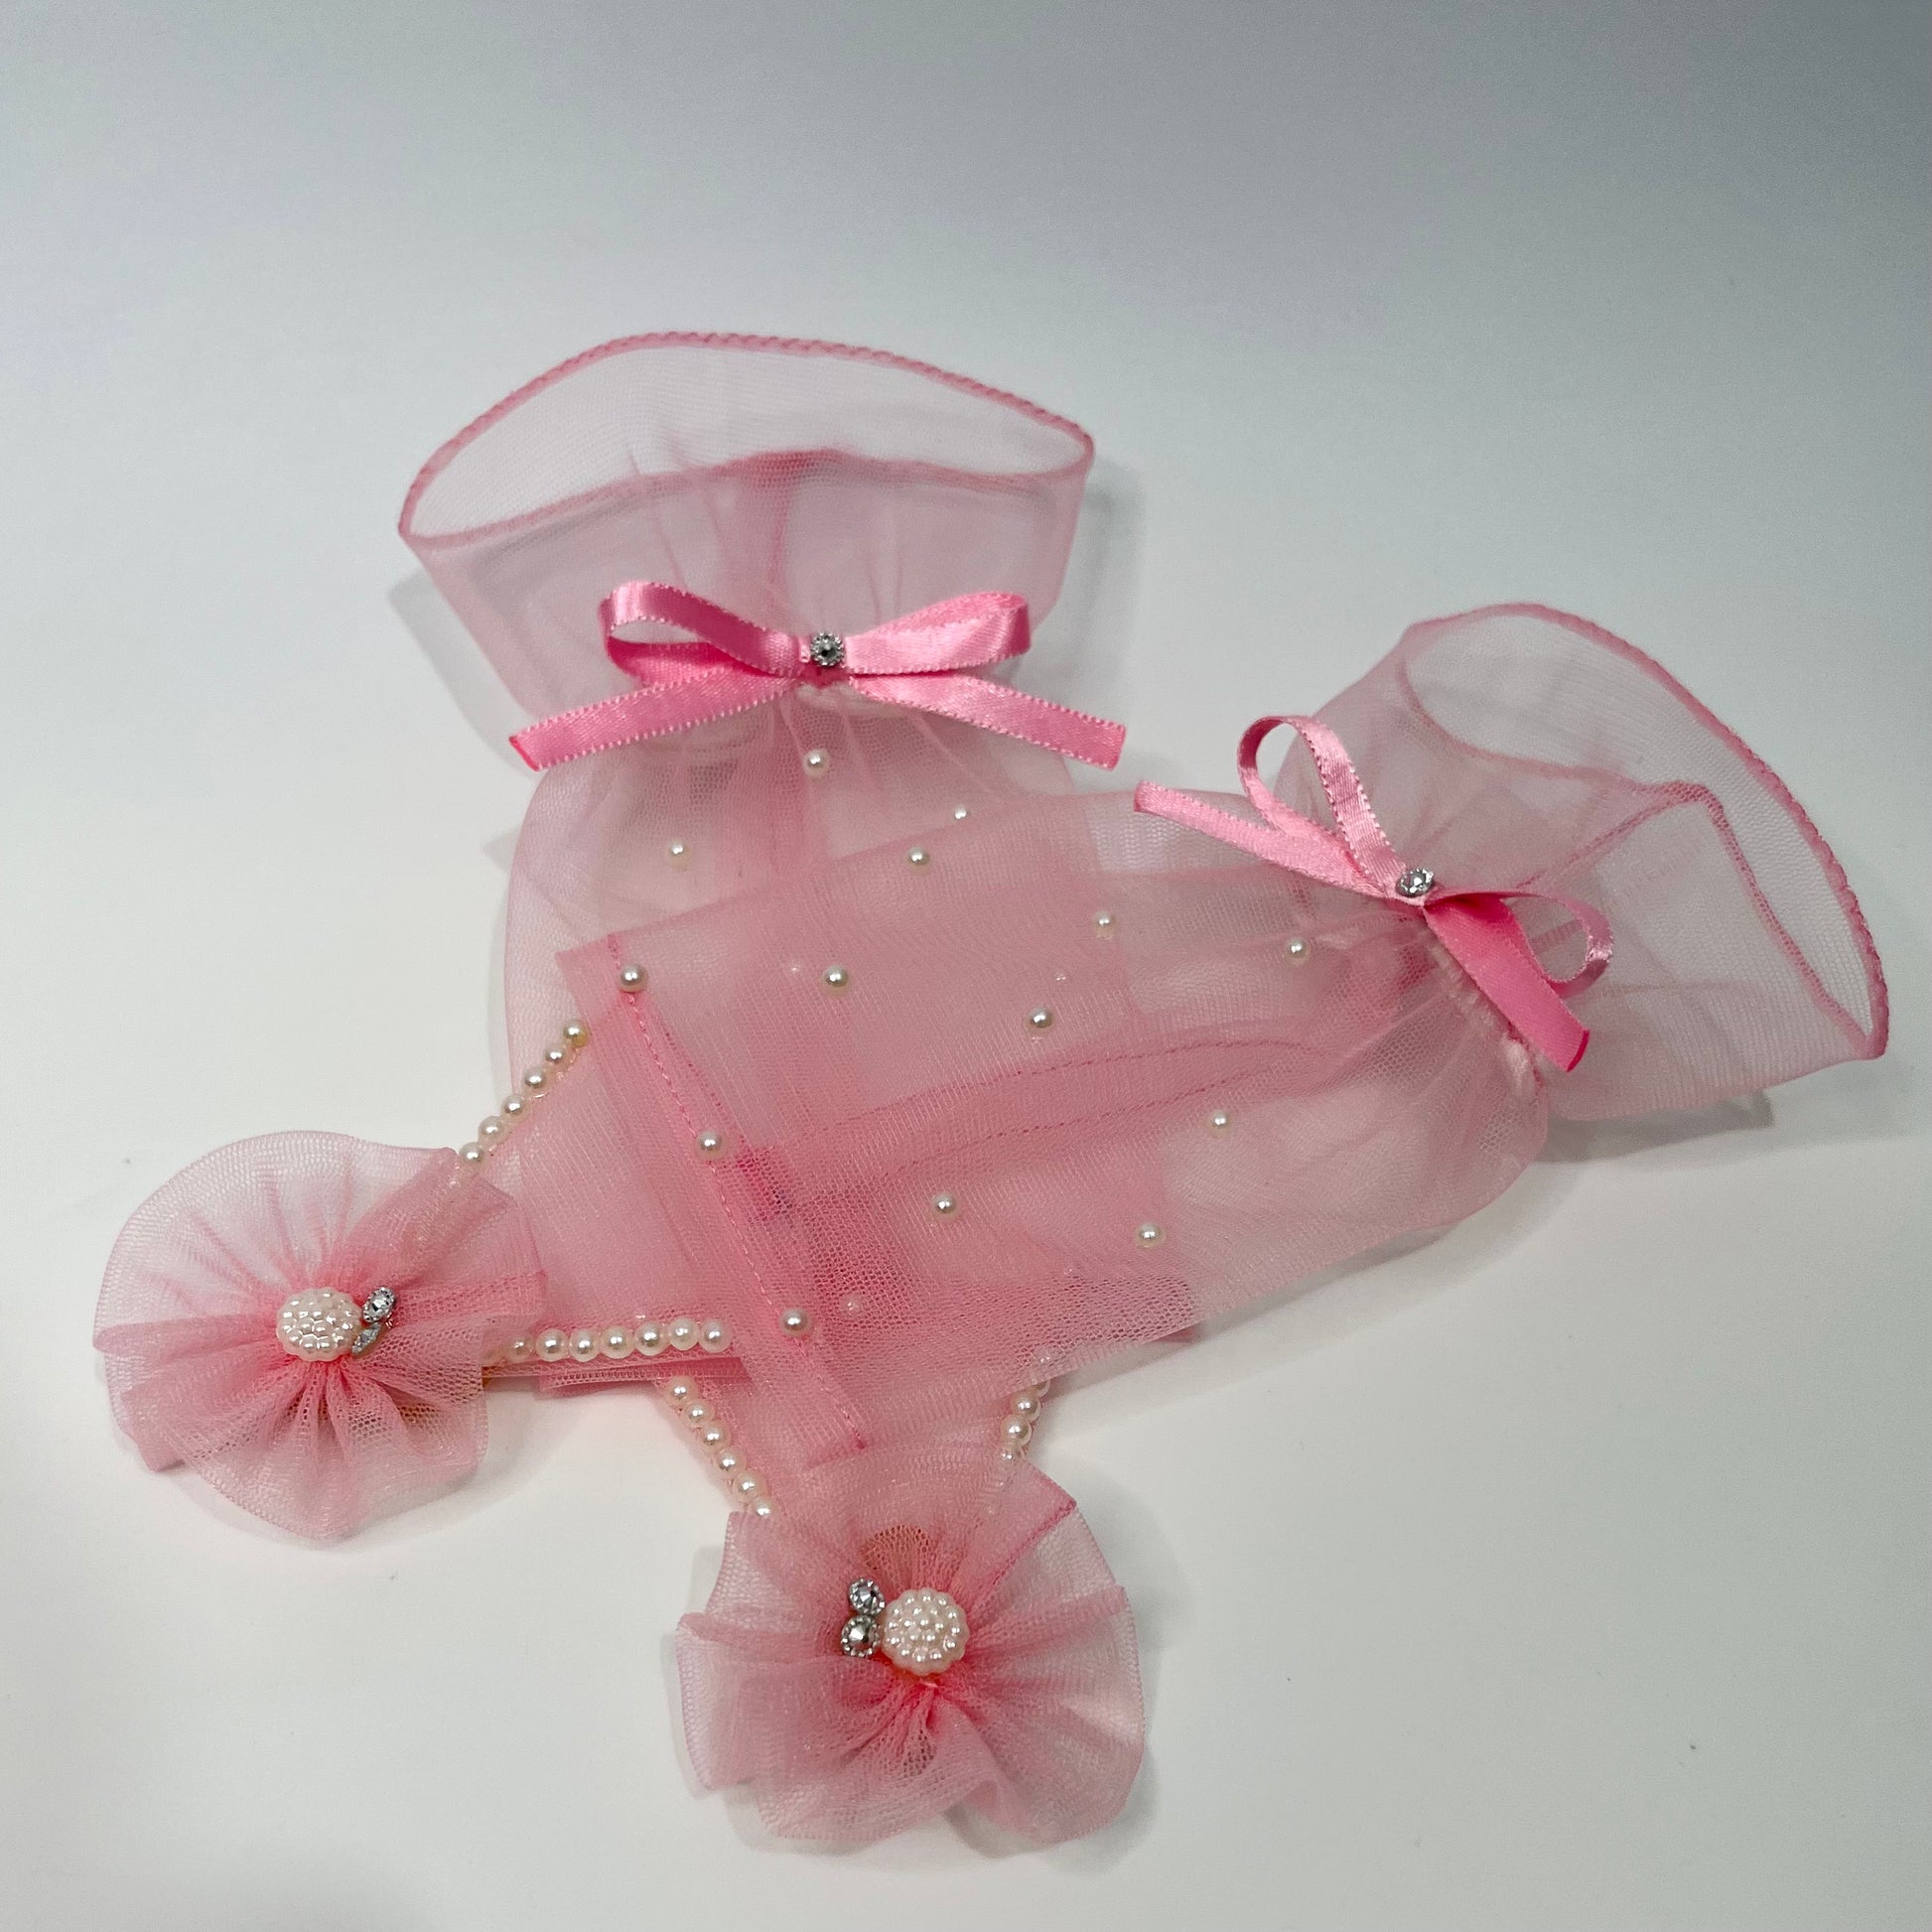 Princess Aurora Pink Gloves | Birthday Princess Accessories